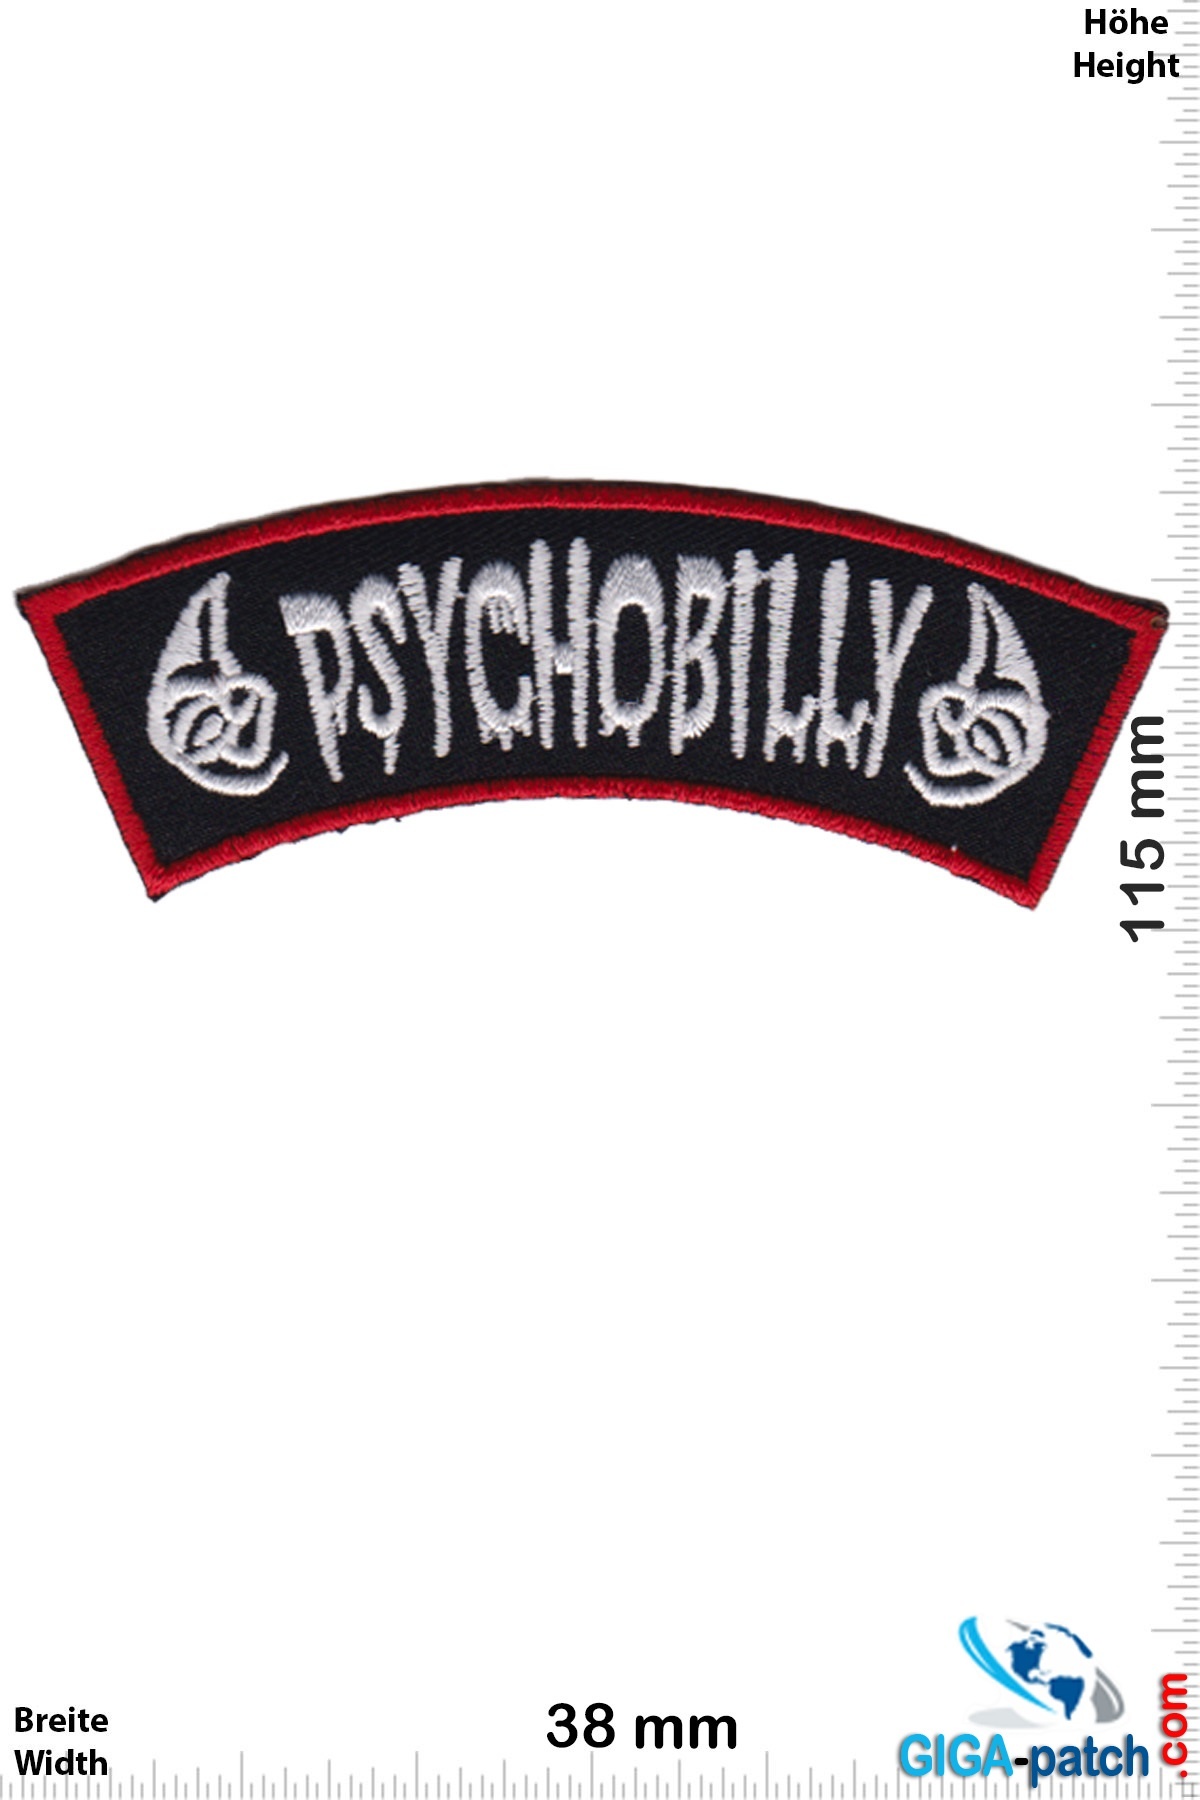 Psychobilly Shop